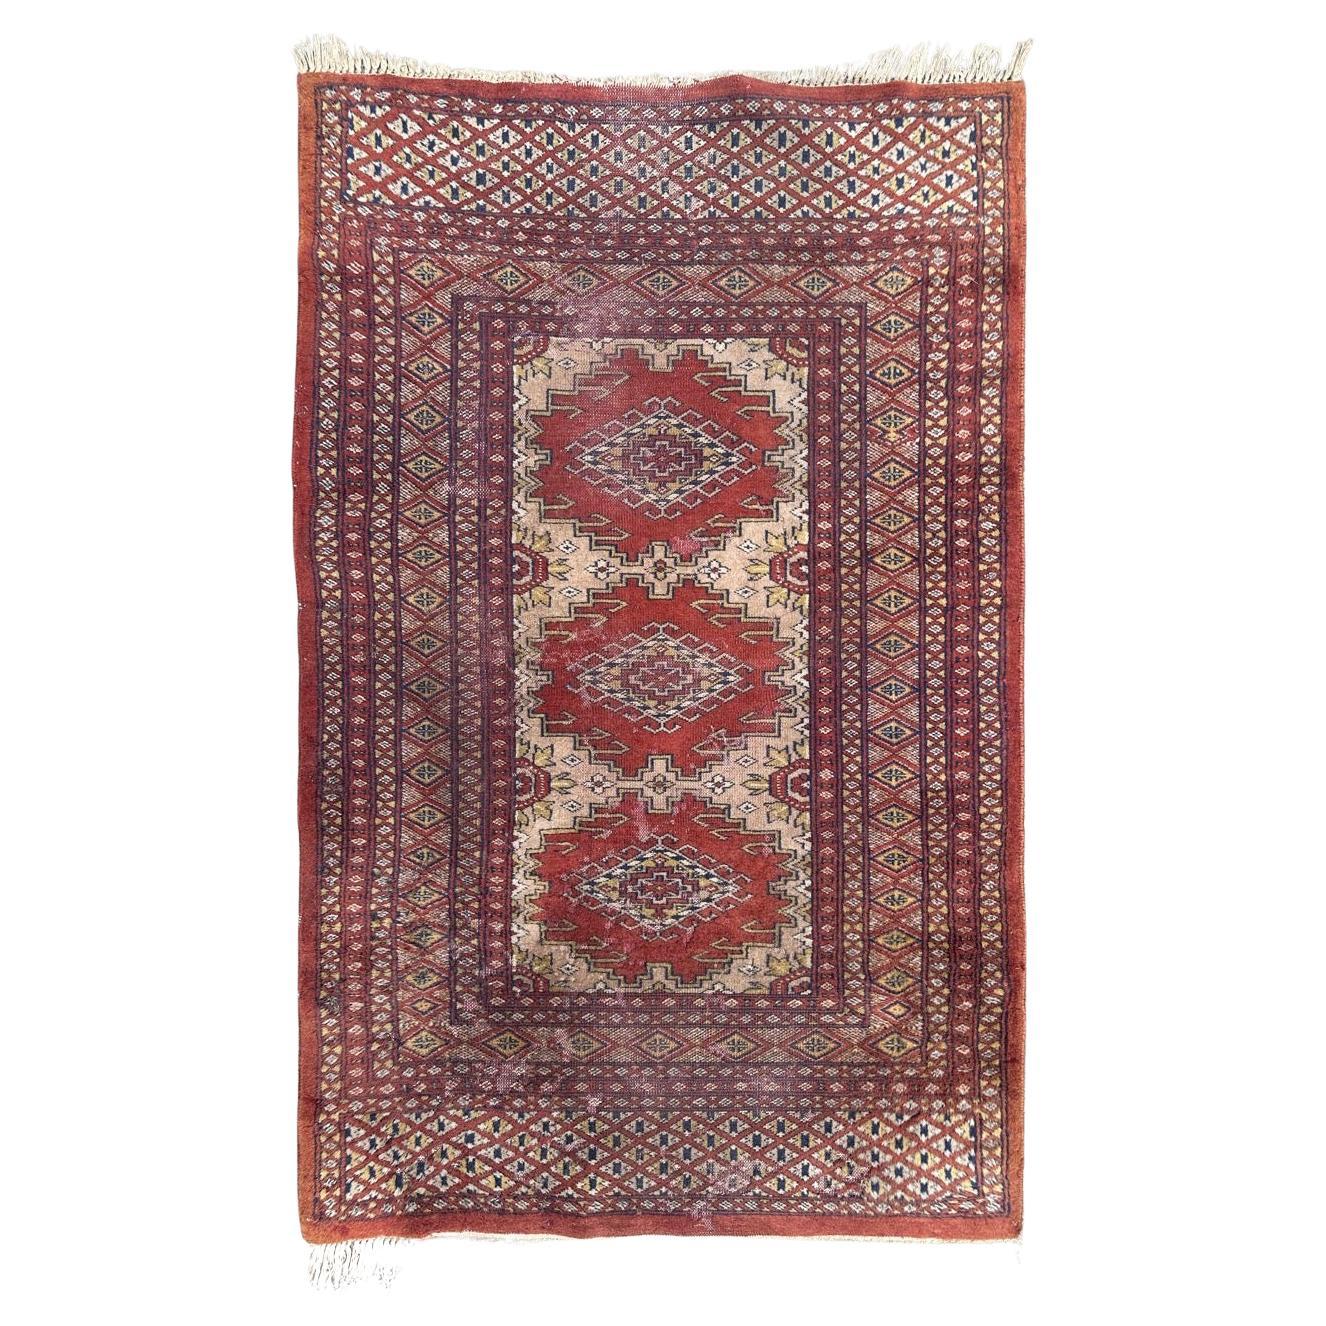 Bobyrugs strapazierter Vintage-Teppich aus Pakistan im turkmenischen Stil 